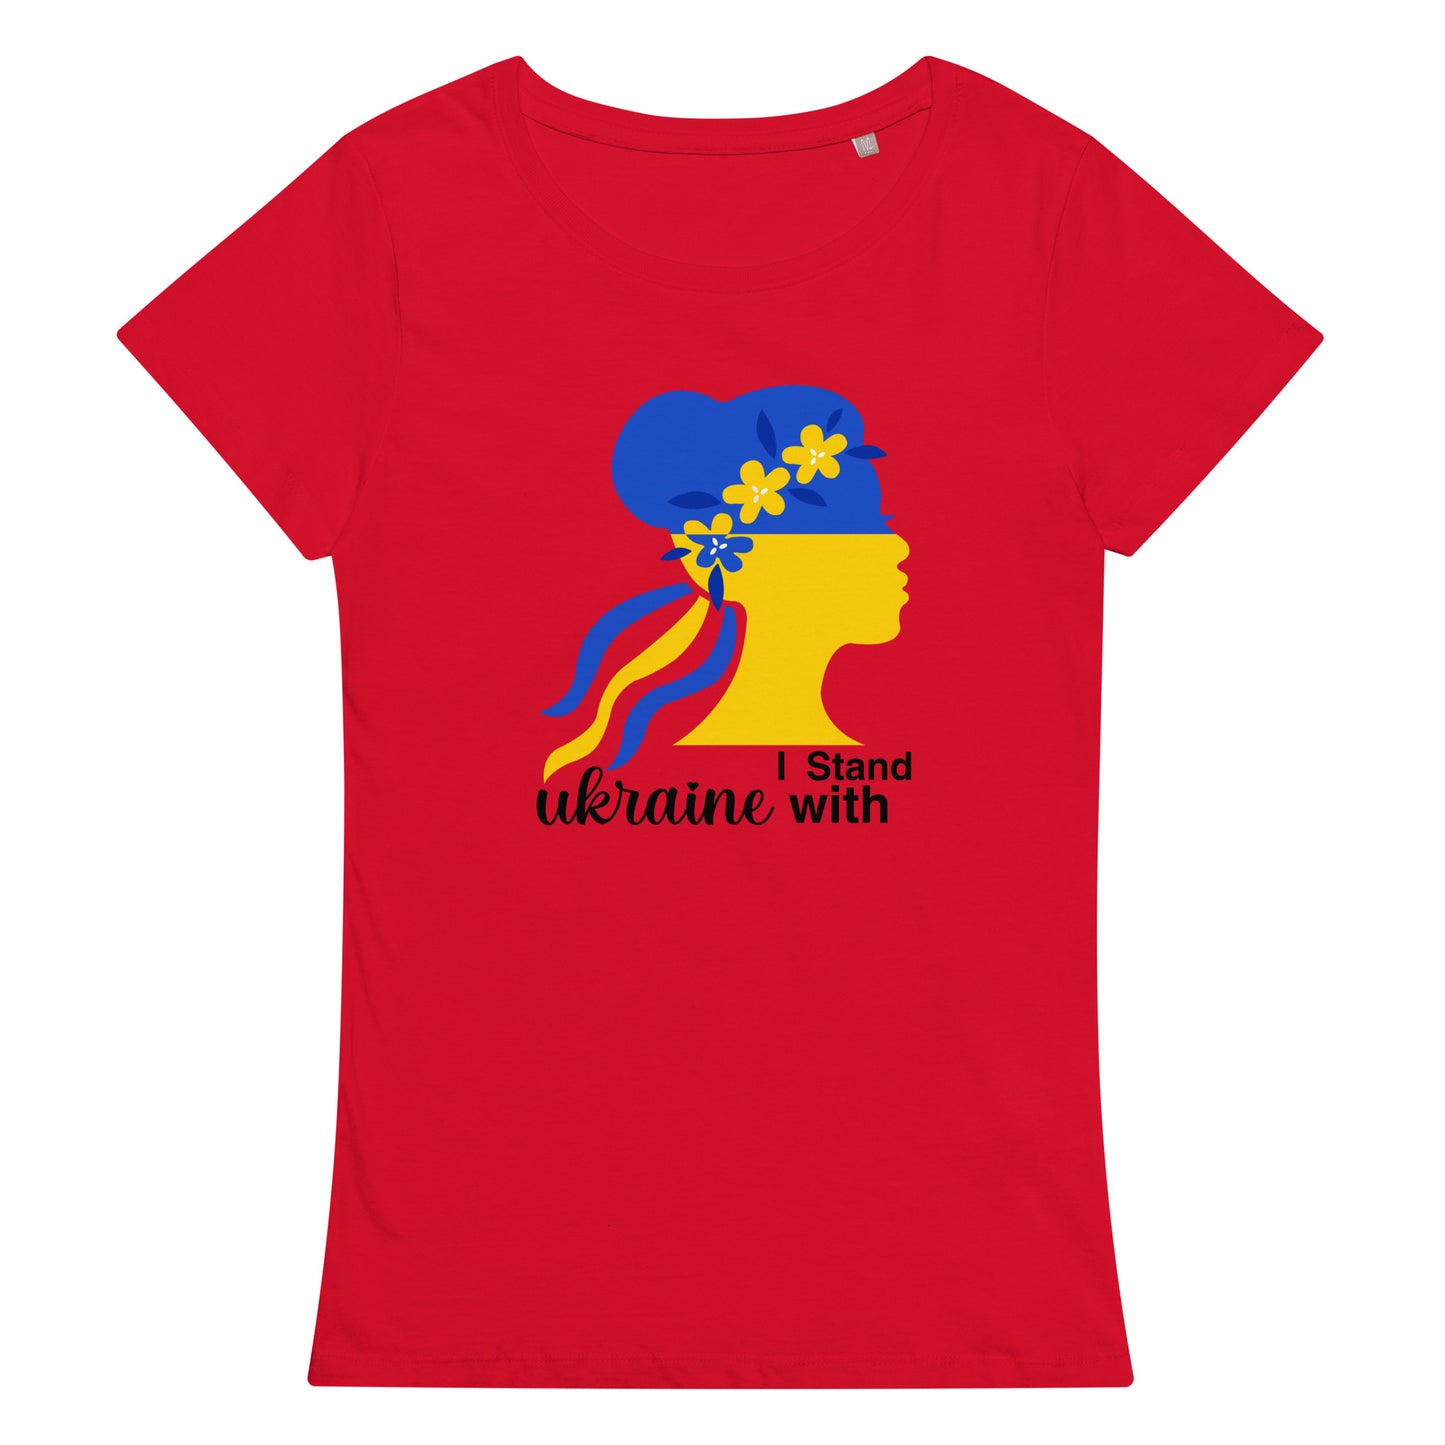 Women’s basic organic t-shirt | I stand with Ukraine G67